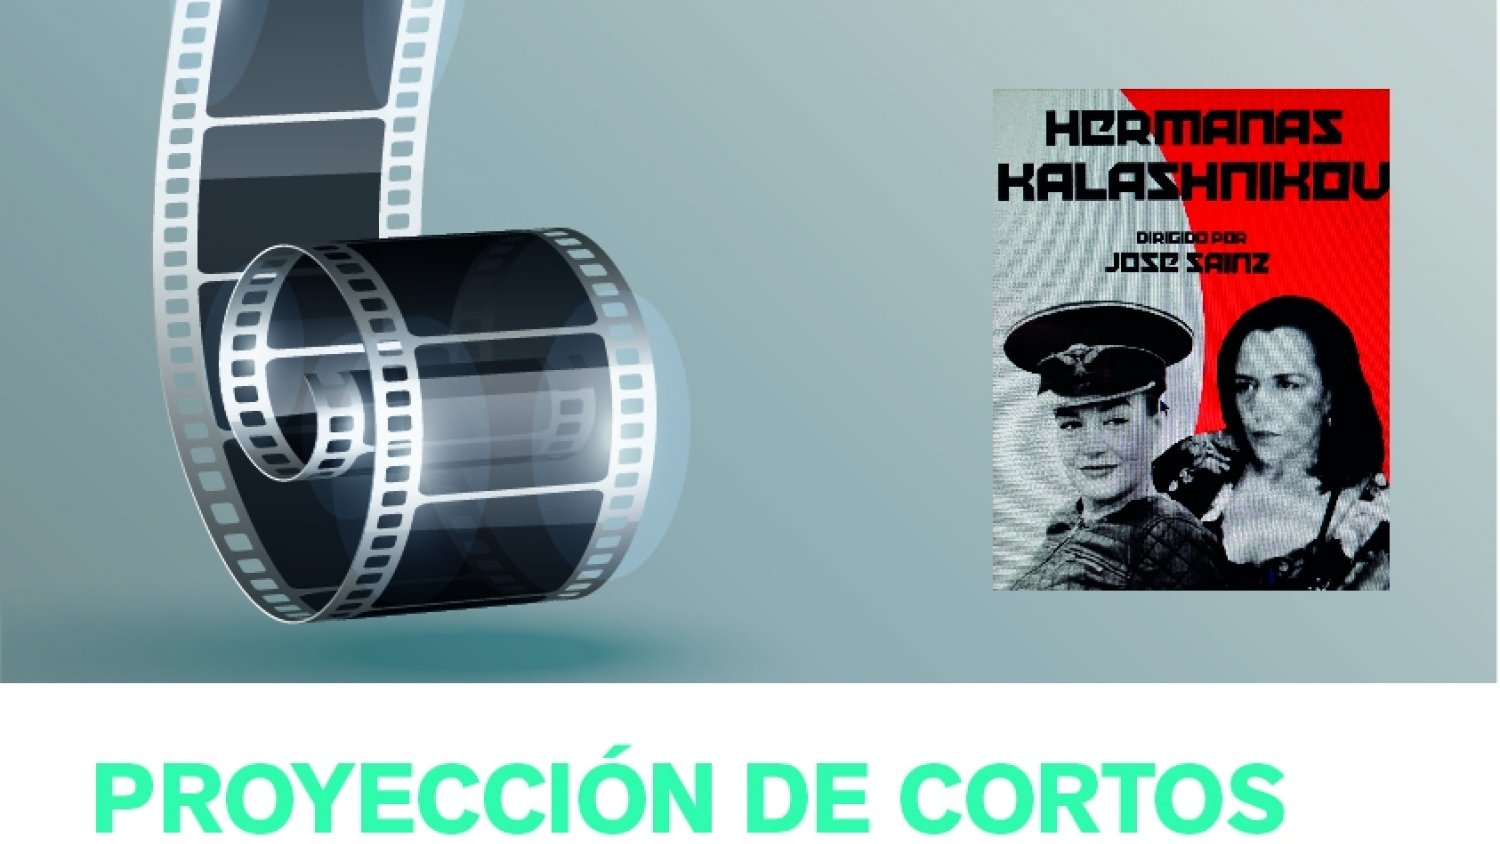 El Centro Cultural Pablo Ruiz Picasso proyecta mañana dos cortometrajes del director José Sainz Blanco